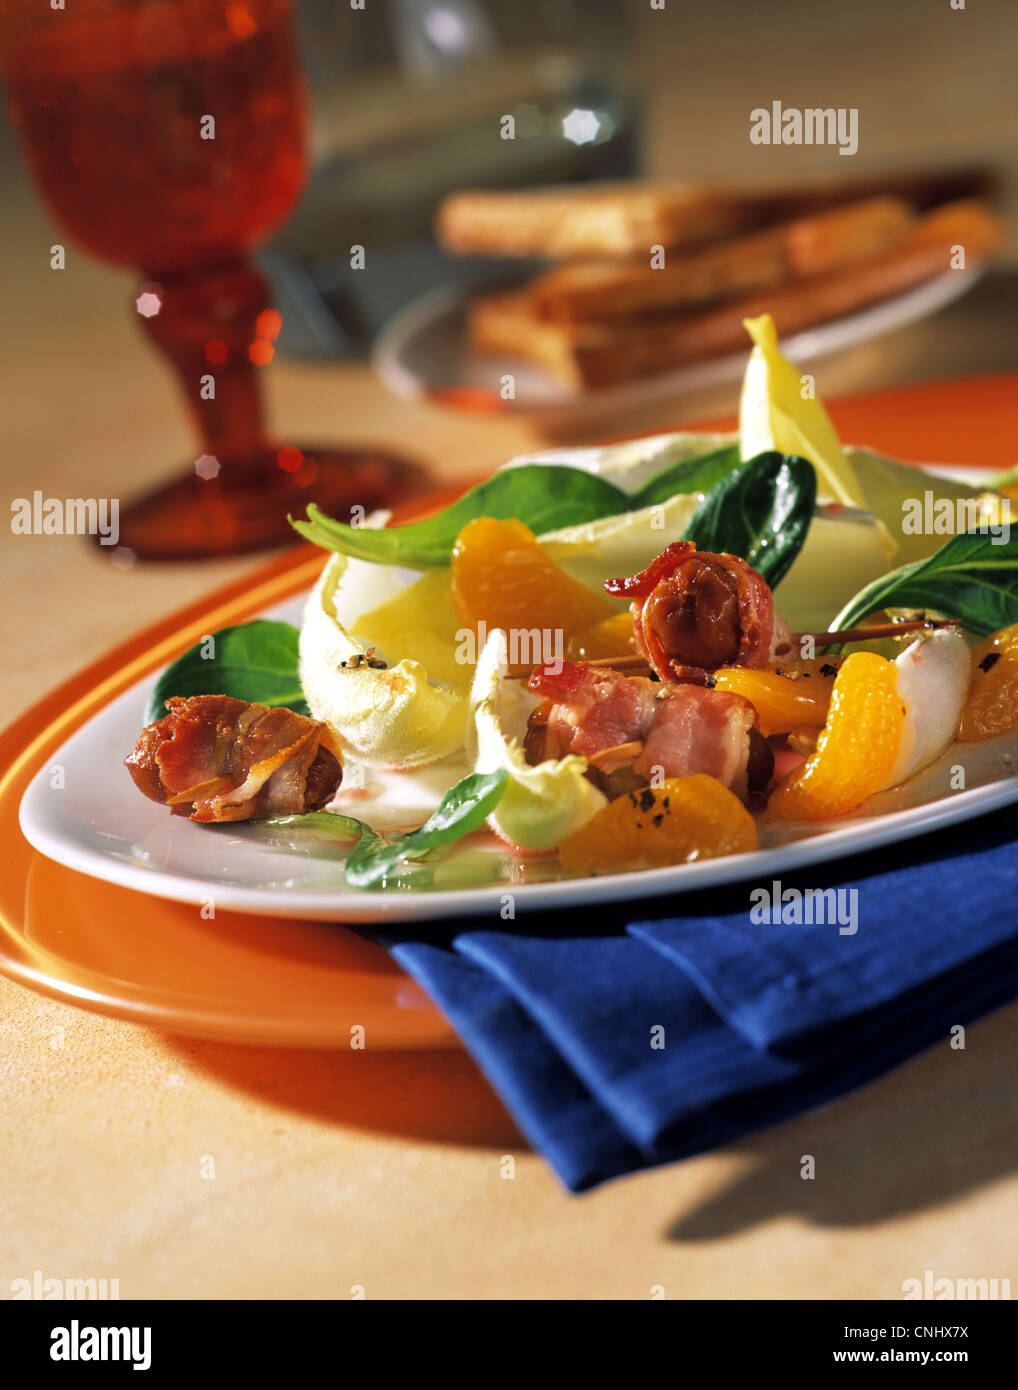 Chicoree-Salat mit Datteln in einer Speck - Mantel Stockfotografie - Alamy